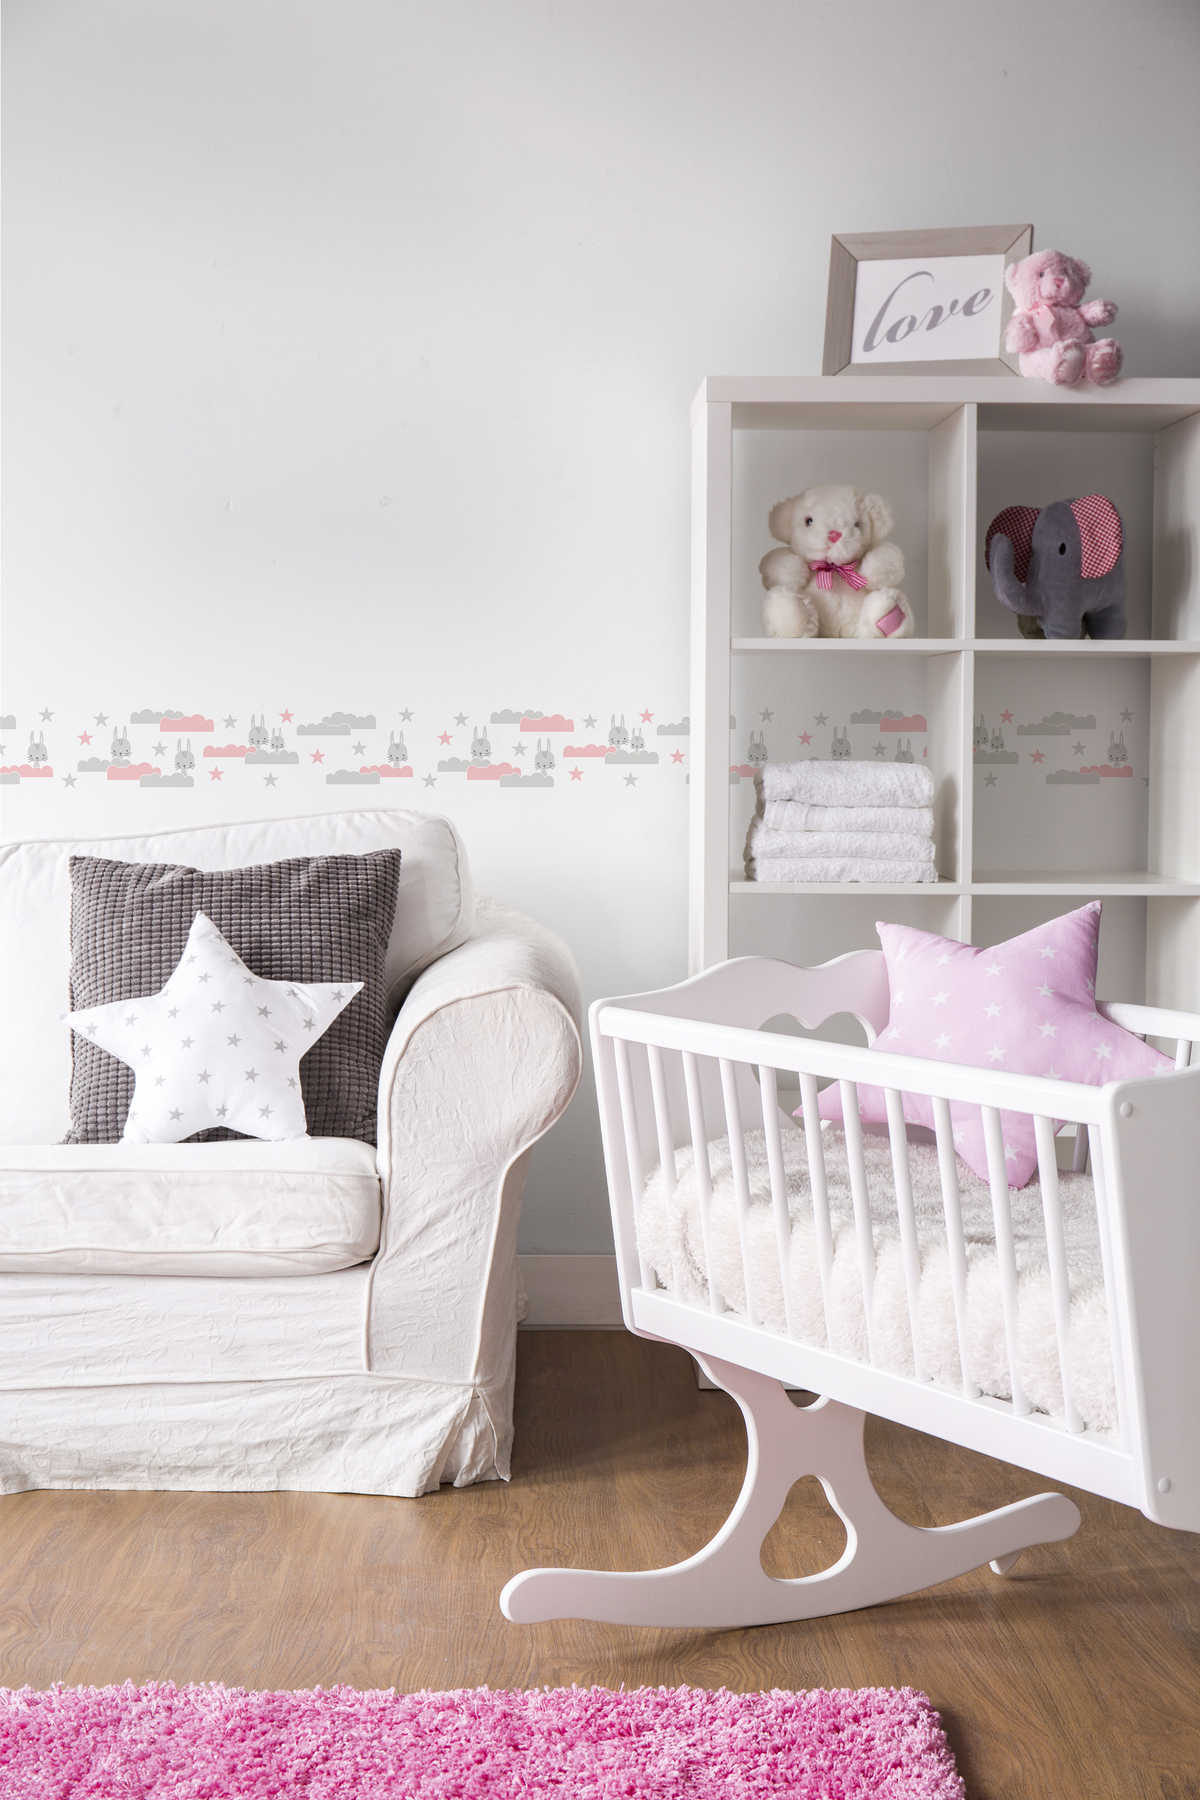             Babykamer behang "Bunny on cloud 7" voor meisjes - grijs, roze, wit
        